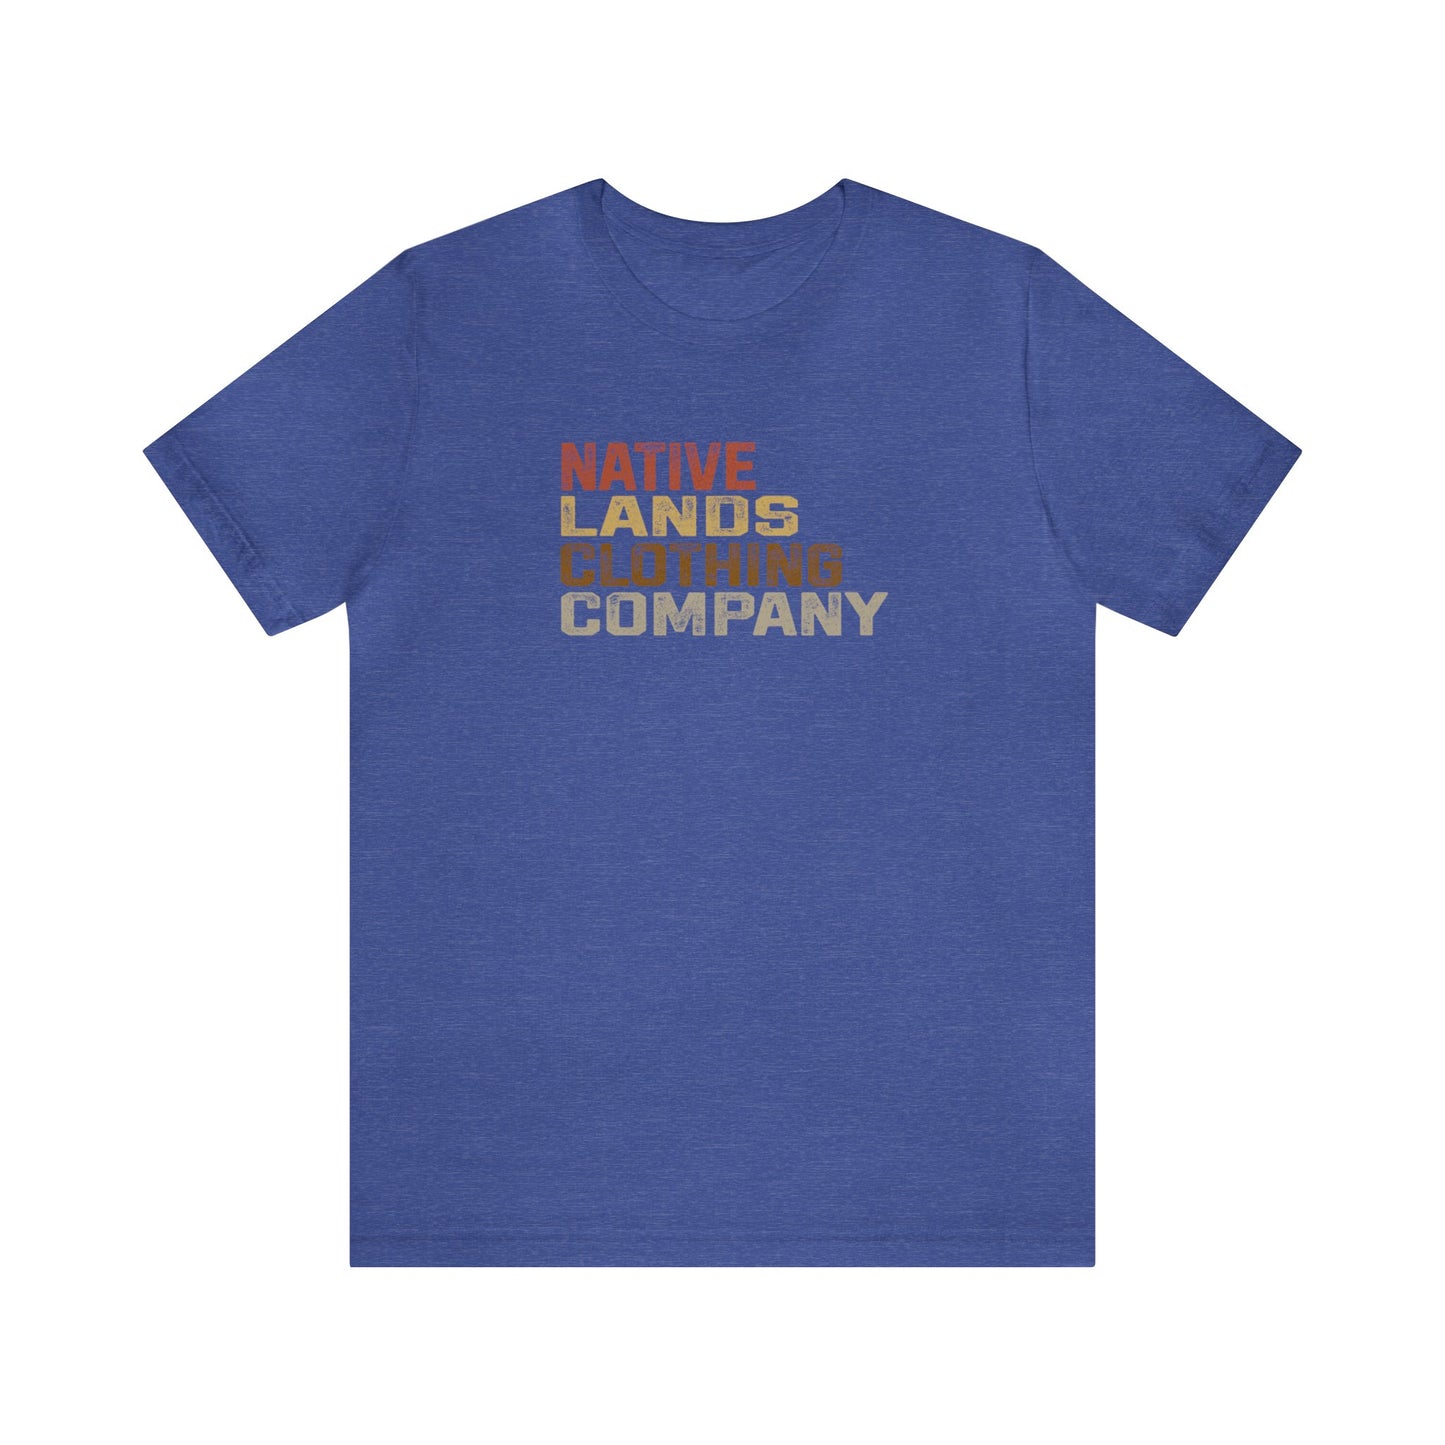 Native Lands Clothing Company Earth Shirt Katoen Native American